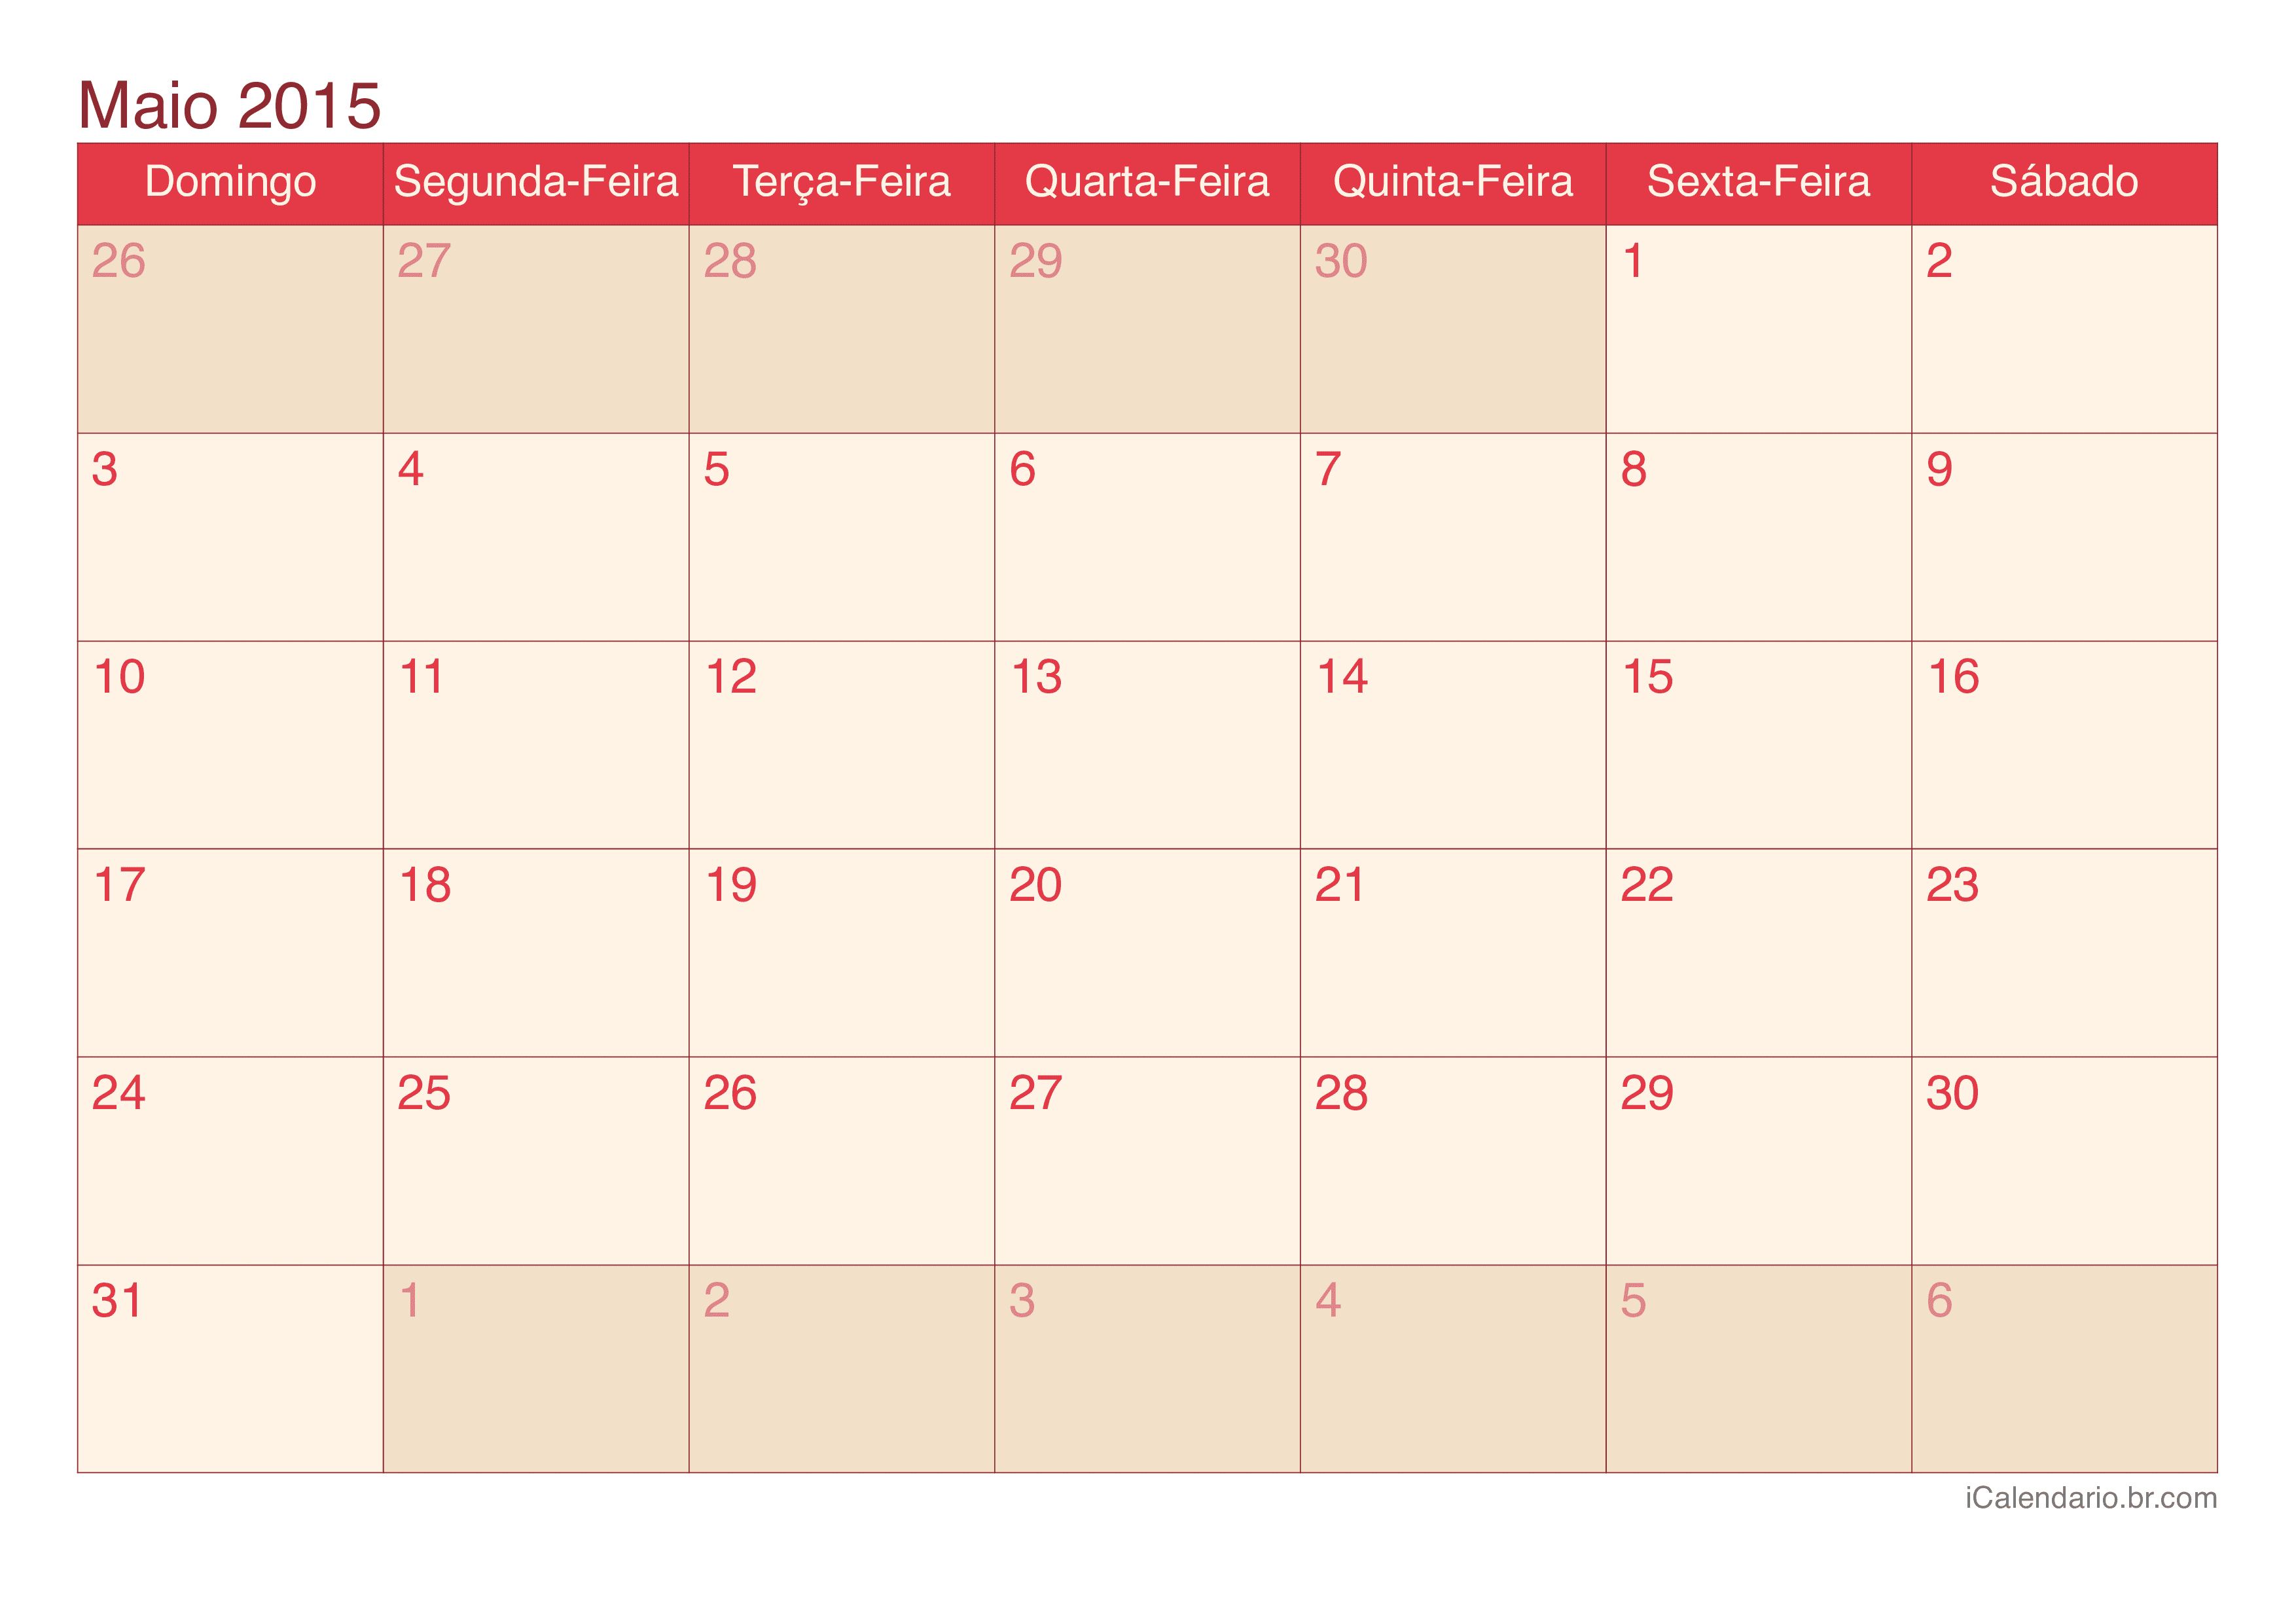 Calendário de maio 2015 - Cherry